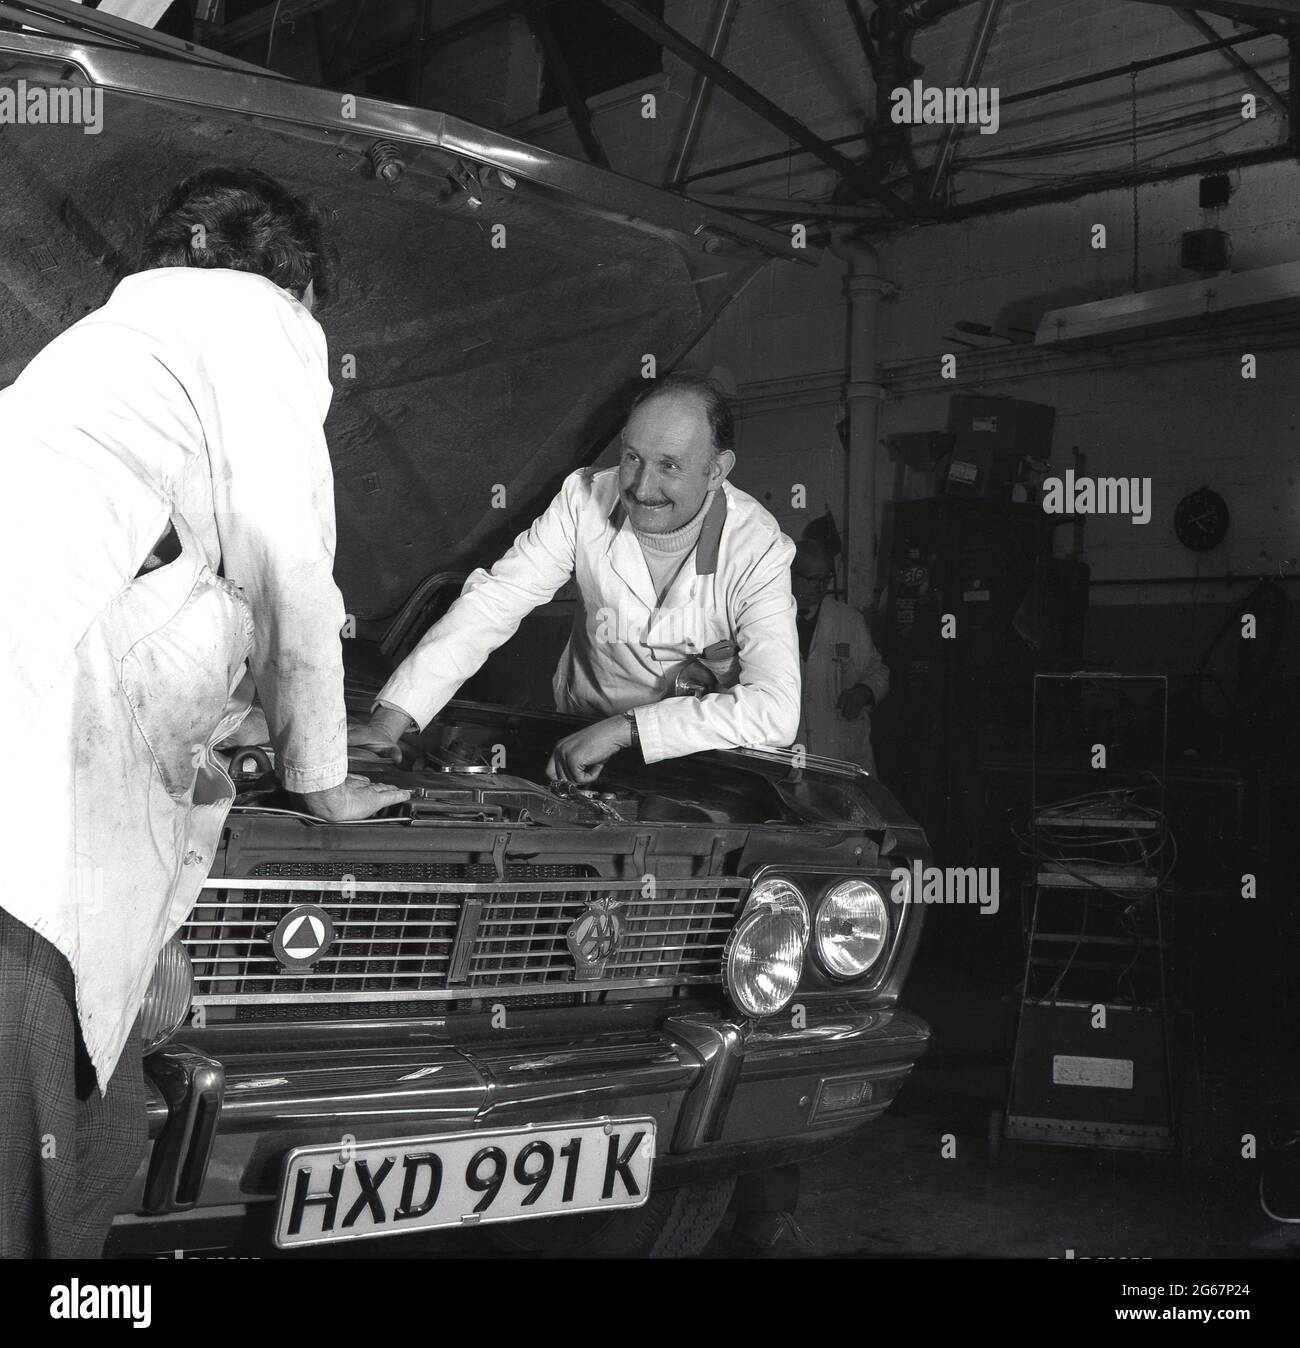 1970s, historisch, in einer Autowerkstatt, zwei Garagenmechaniker, die neben einem Motorwagen mit aufstehender Motorhaube stehen, den Motor des Autos betrachten und versuchen herauszufinden, was das Problem ist, England, Großbritannien. Stockfoto